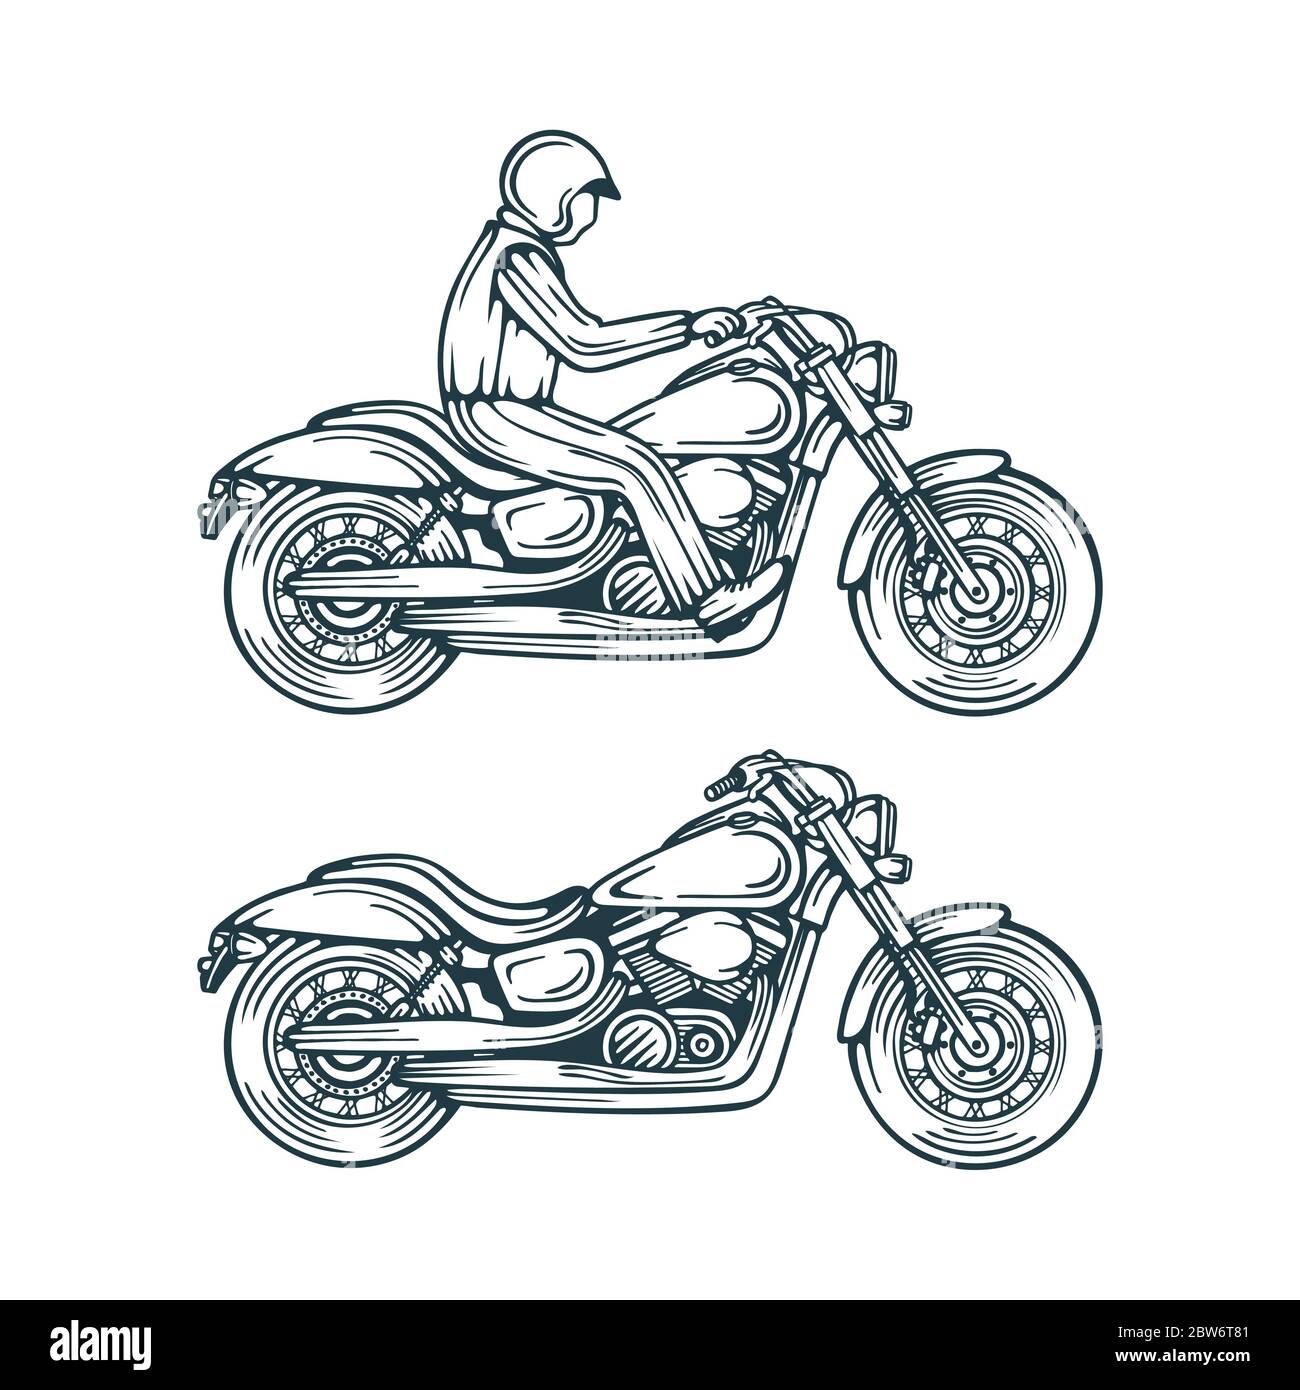 Motorrad und Motorradfahrer handgezeichnete Vektor-Illustrationen Set. Motorrad Skizze Zeichnung isoliert auf einem weißen Hintergrund. Vintage Chopper Motorrad. Stock Vektor